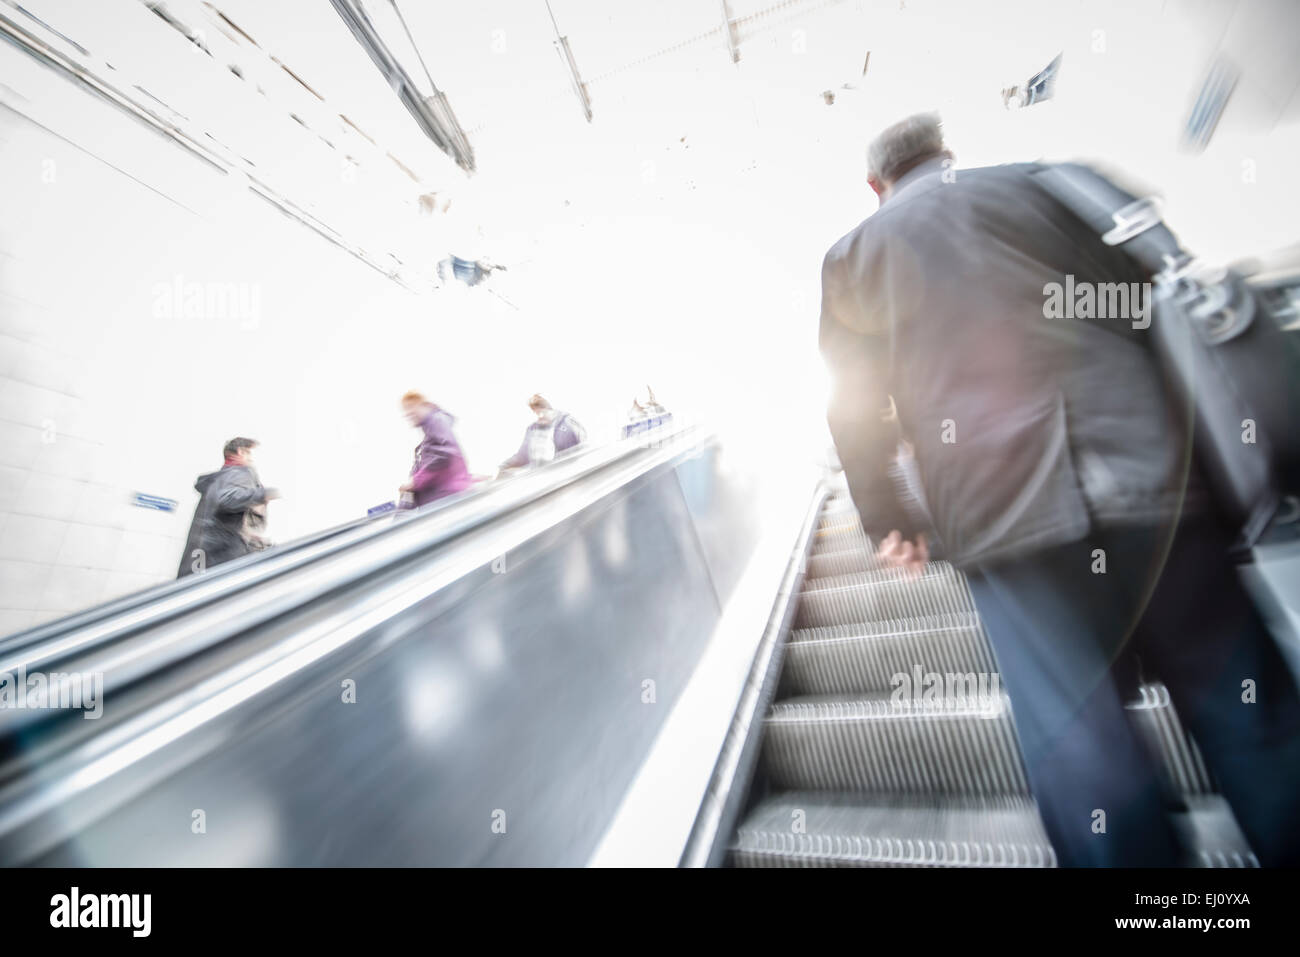 Menschen an bewegten Rolltreppe, Londoner u-Bahn Stockfoto